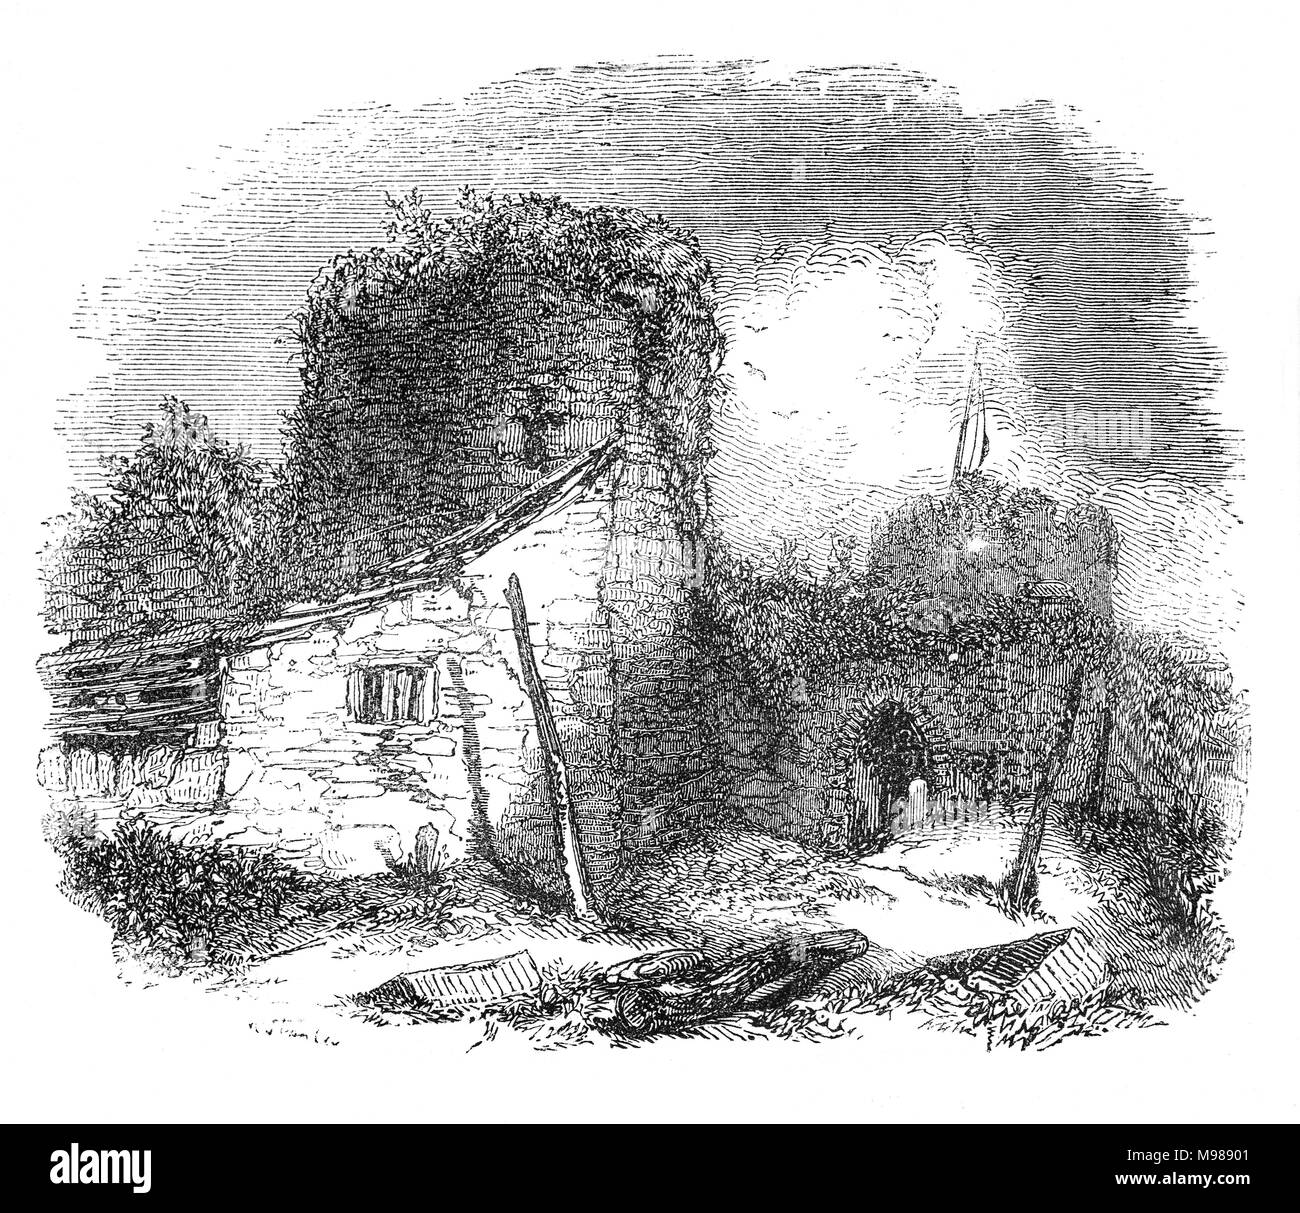 Conwy aka Conway Castello è una fortificazione medievale a Conwy, sulla costa settentrionale del Galles. È stato costruito da Edward I, durante la sua conquista del Galles, tra il 1283 e il 1289. Fu costruita come parte di un più ampio progetto di creare la città murata di Conwy e nei prossimi secoli il castello ha svolto un ruolo importante in numerose guerre. Ha resistito all'assedio di Madog ap Llywelyn nell'inverno del 1294-95, ha agito come un temporaneo rifugio per Richard II nel 1399 ed è stata mantenuta per diversi mesi dalle forze fedeli a Owain Glyndŵr nel 1401. Foto Stock